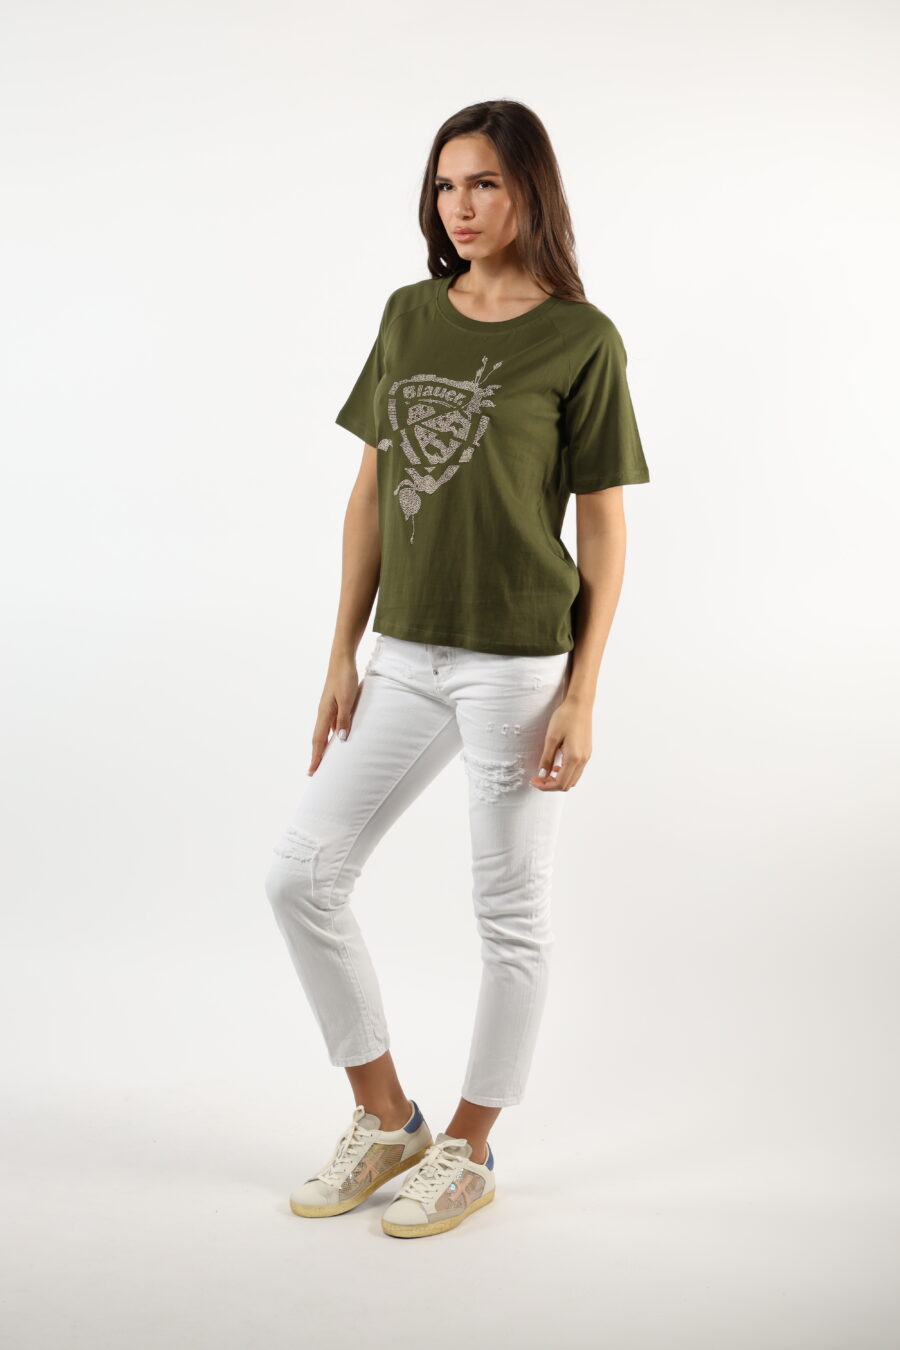 T-shirt verde militar com emblema dourado - 110617